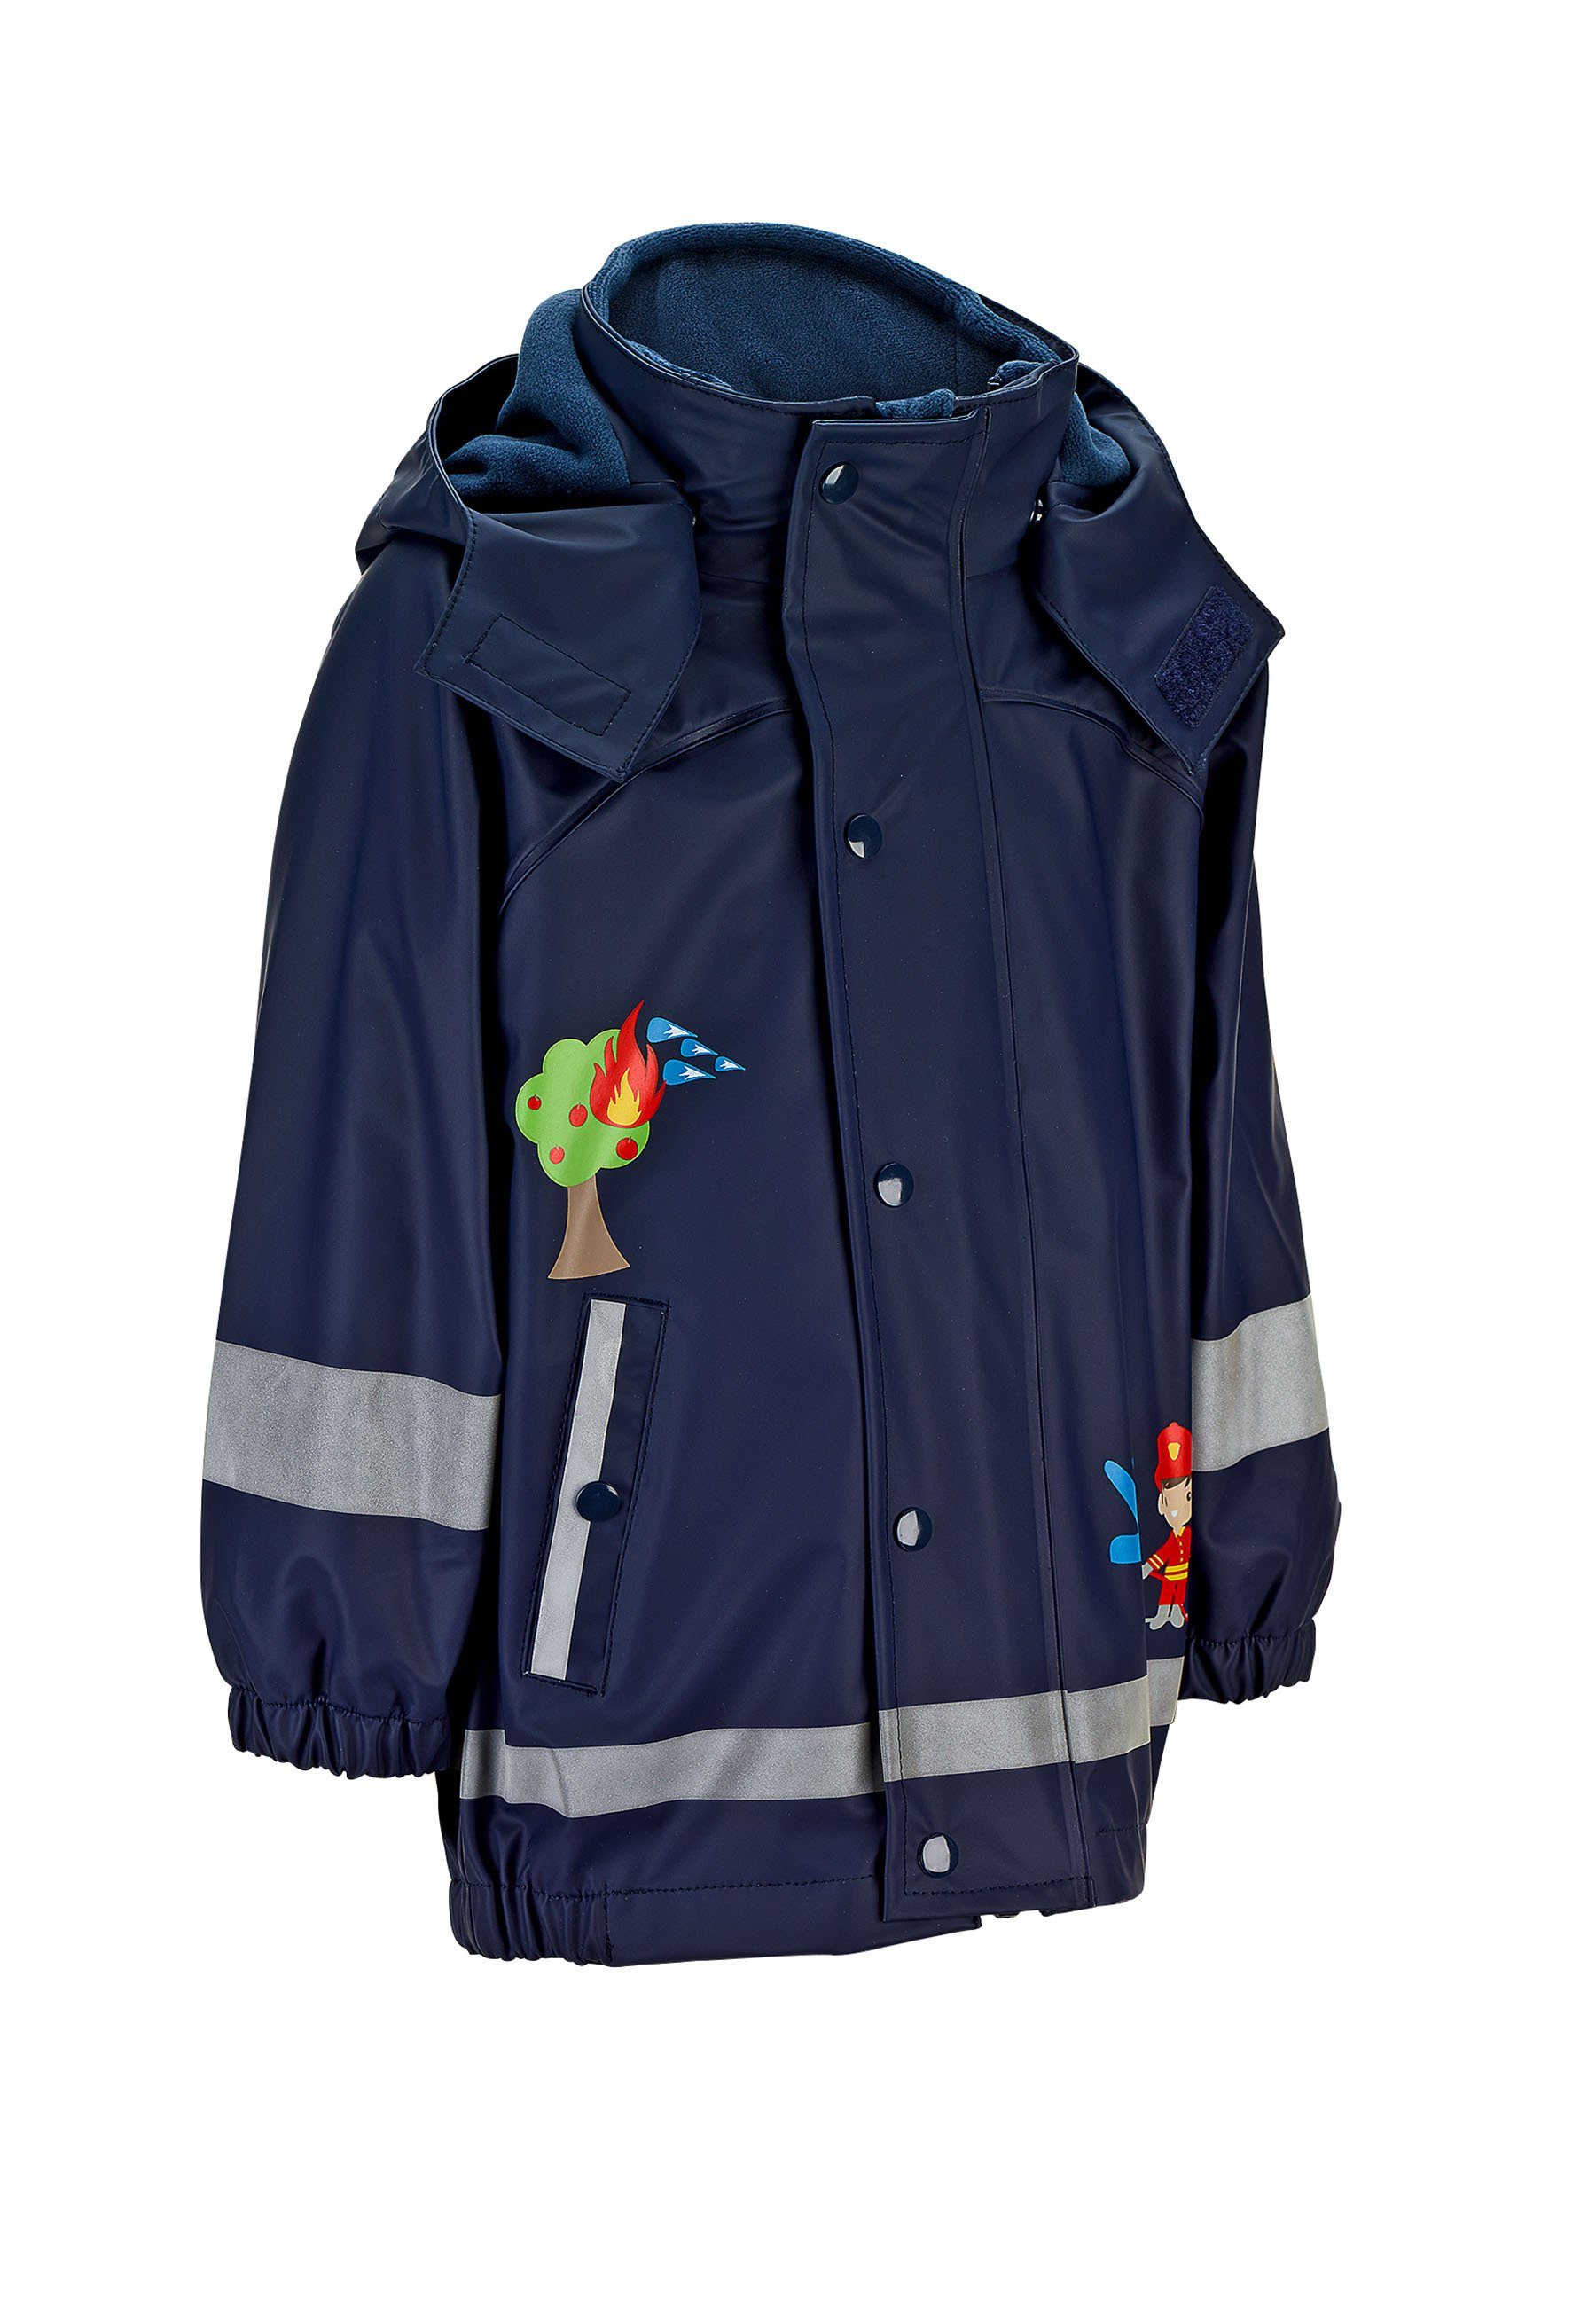 Kinder Jungen (Gr. 50 - 92) Sterntaler® Outdoorjacke Regenjacke mit Innenjacke Regenjacke Kinder - Regenjacke Unisex, Regenjacke